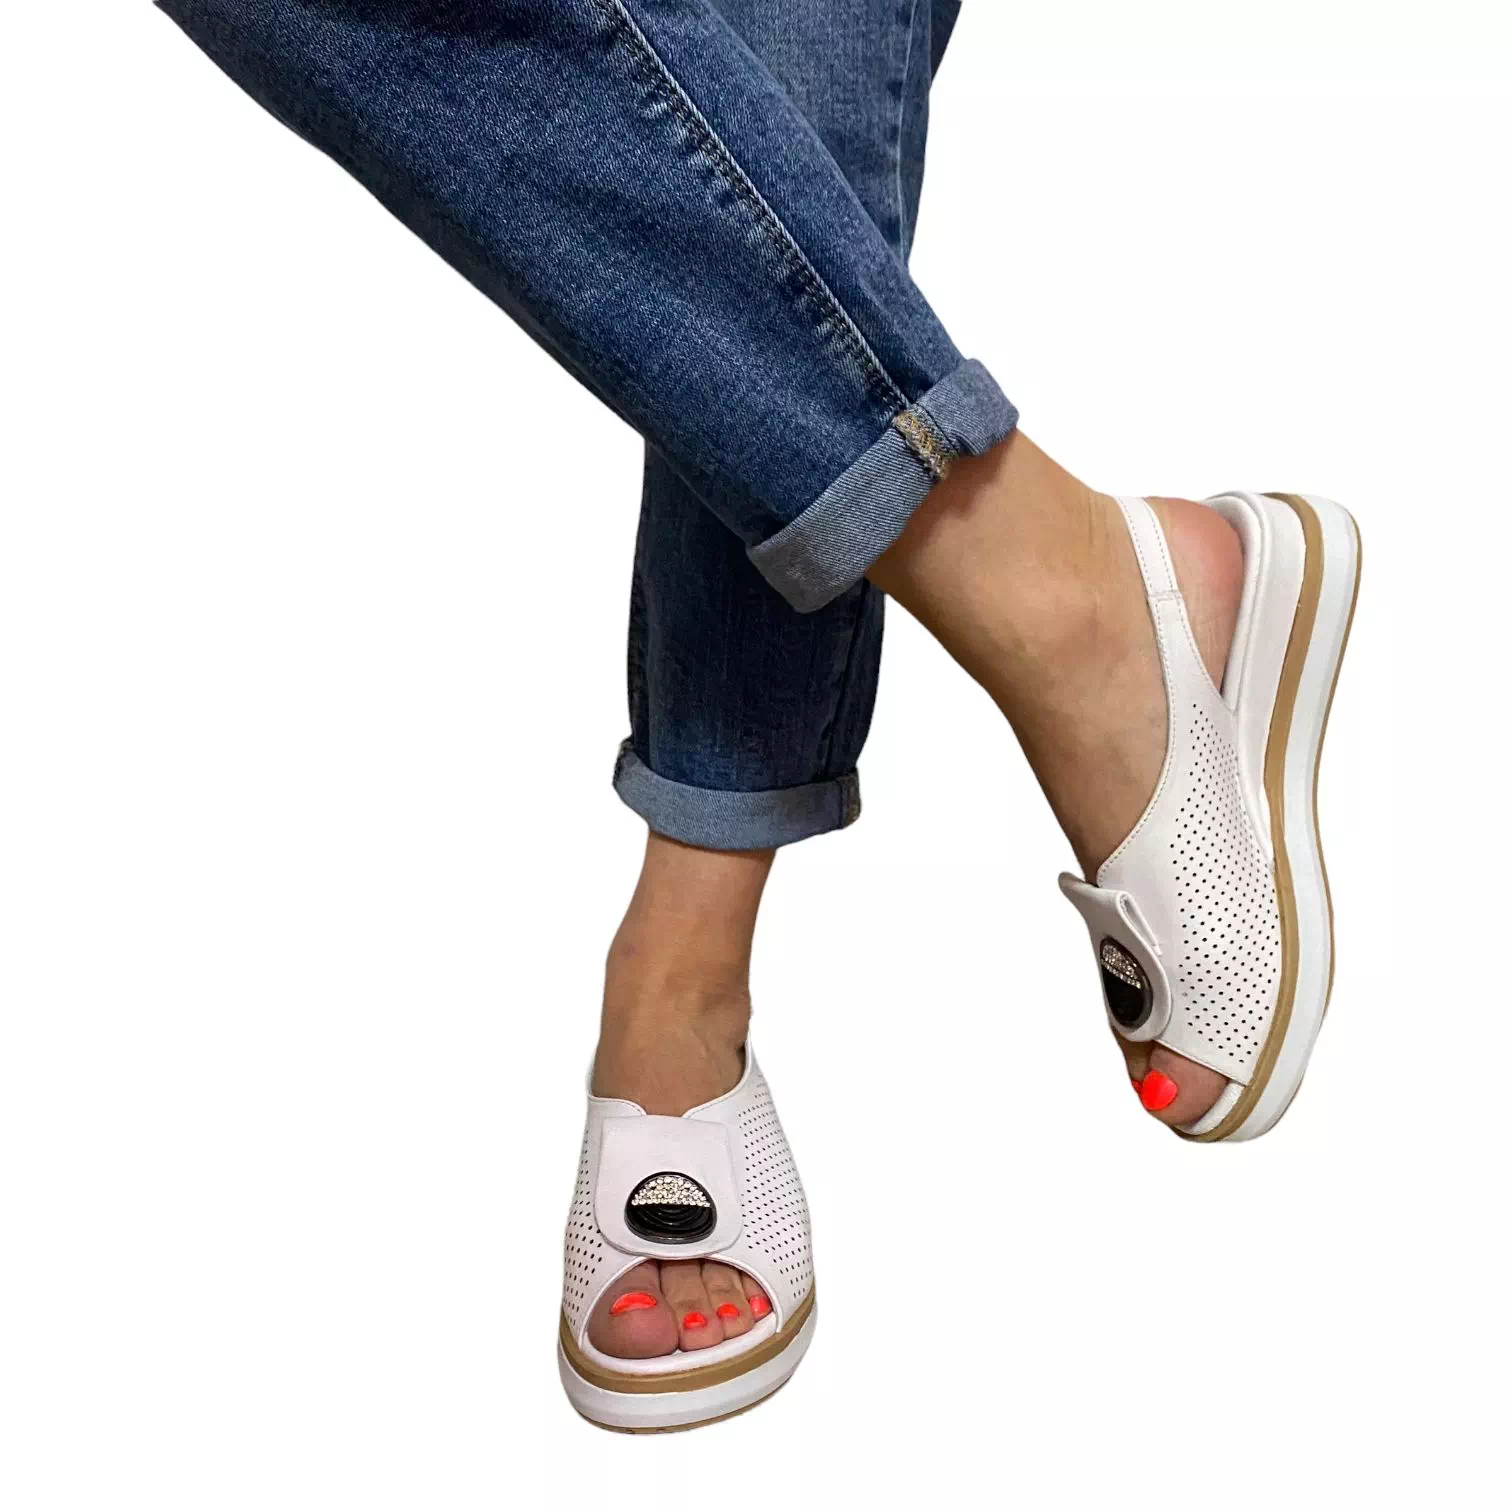 Sandale albe cu perforatii si accesoriu stralucitor